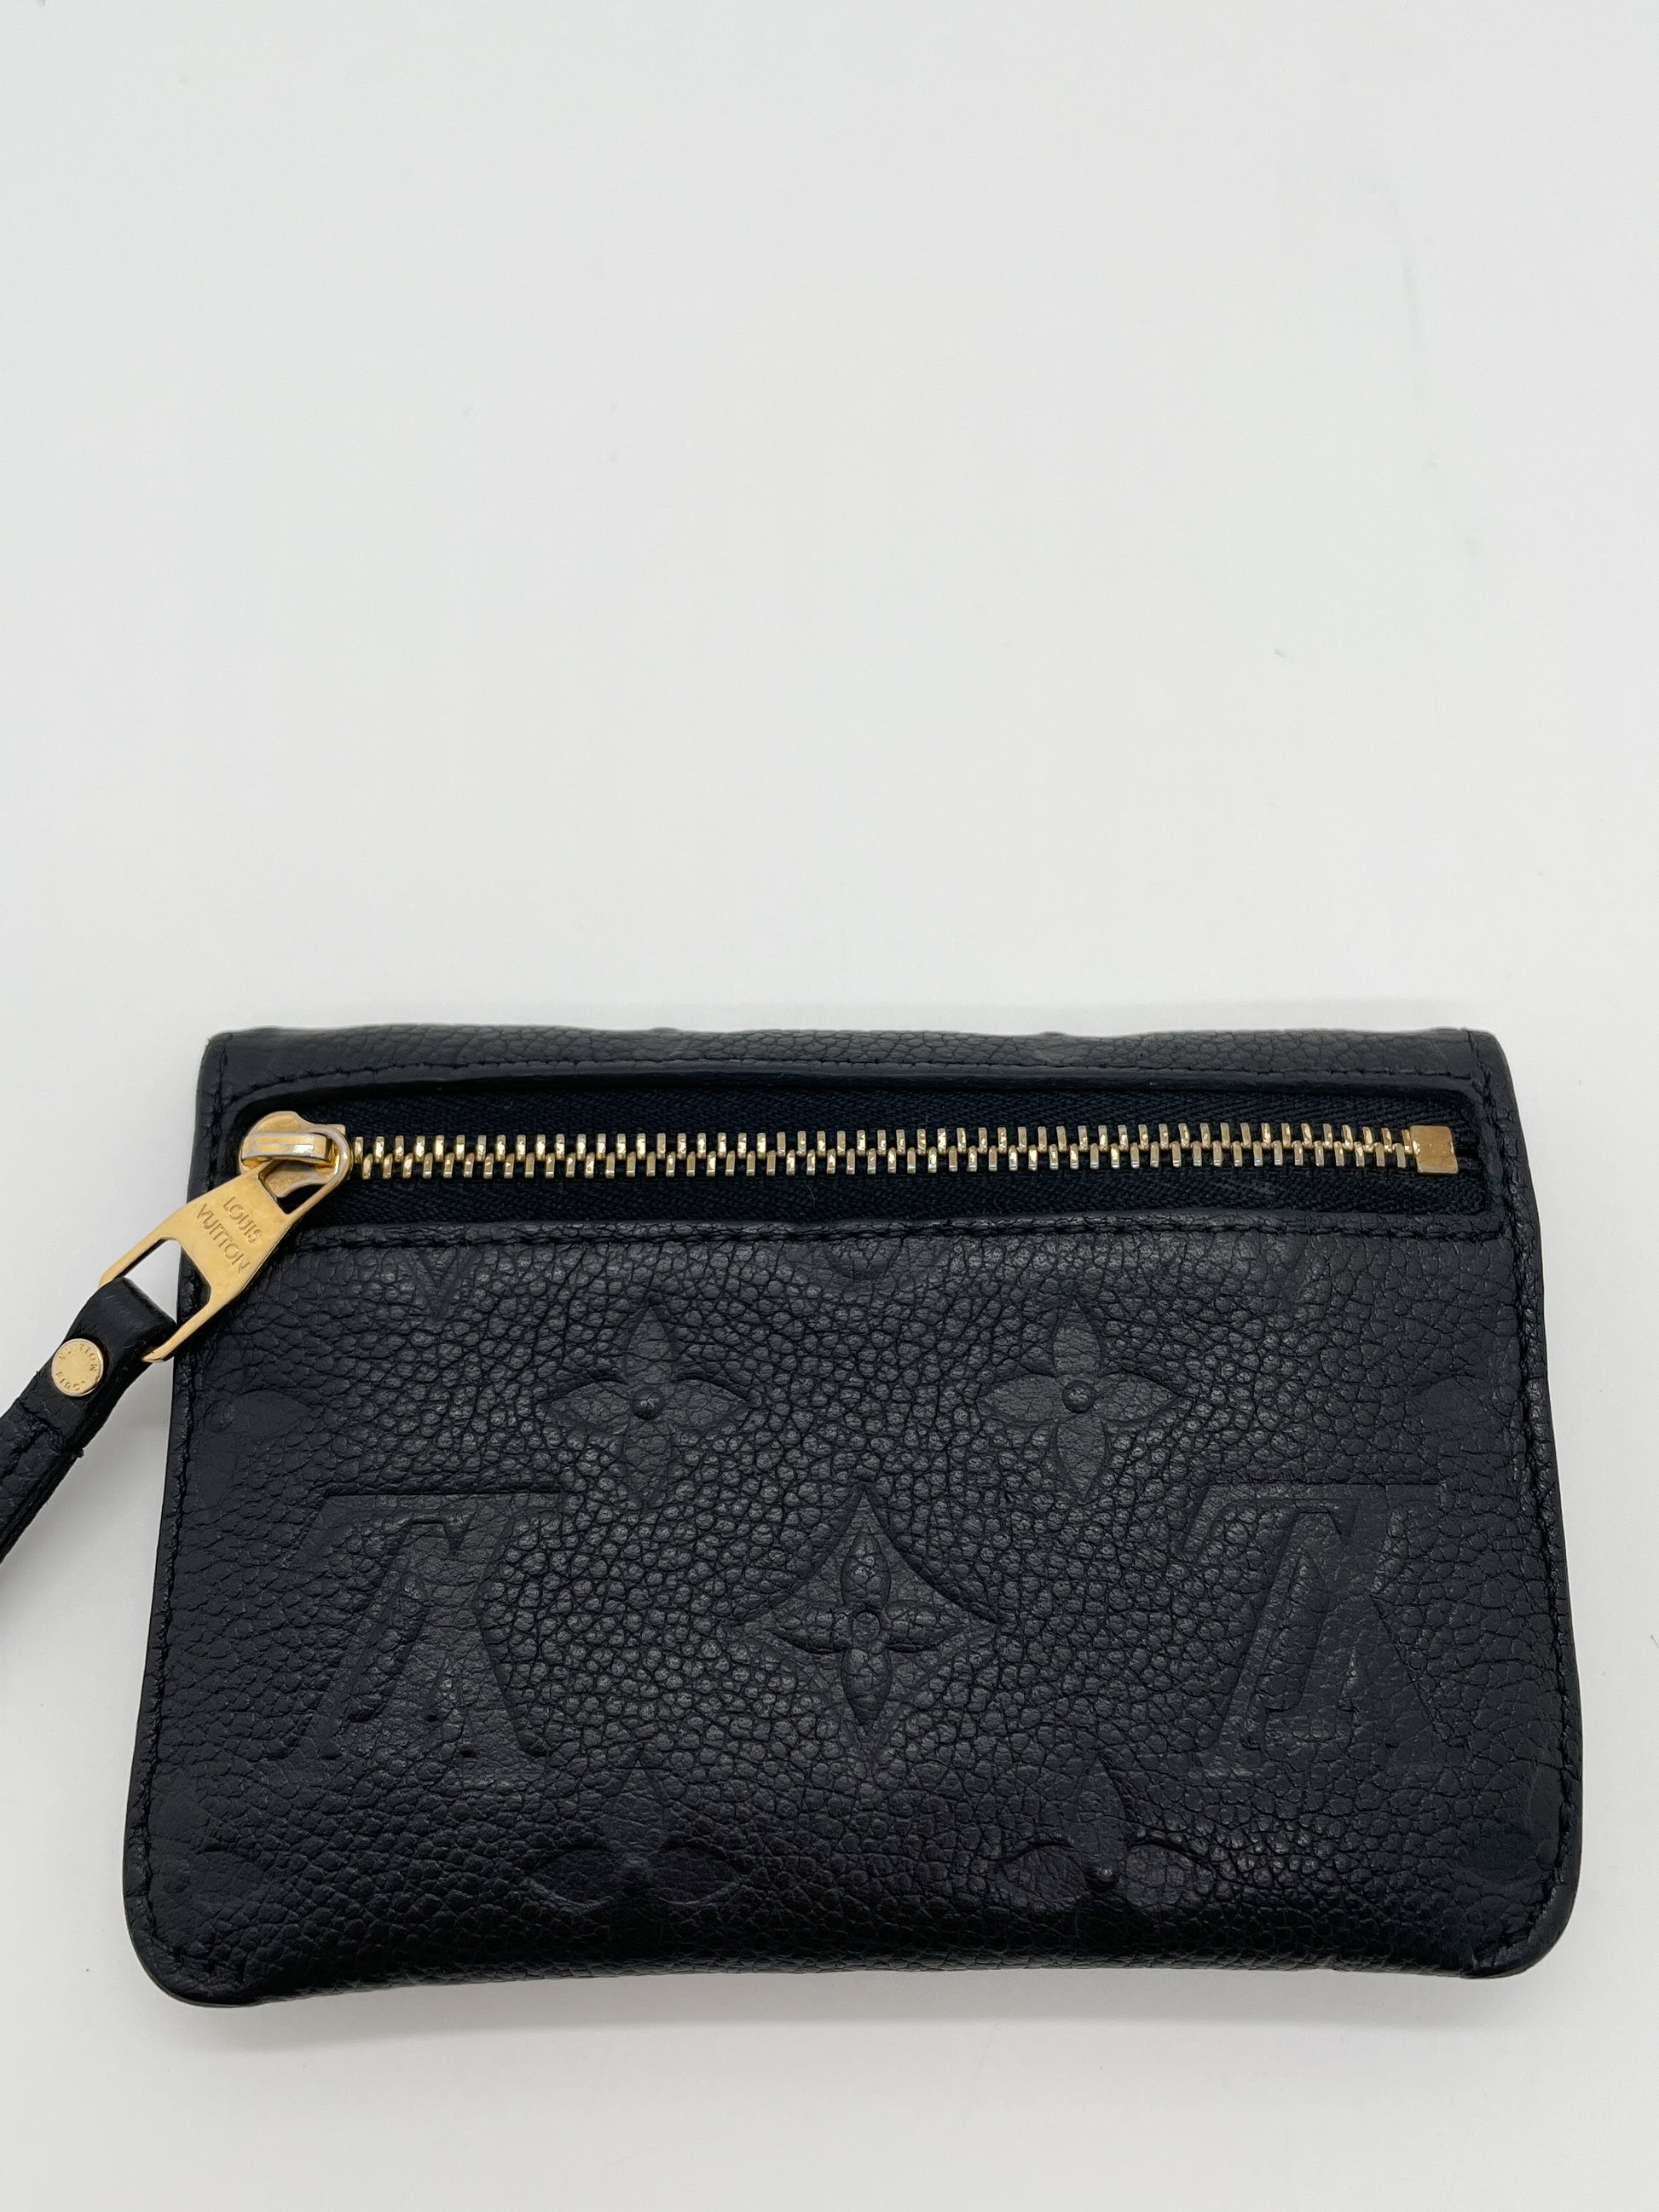 6 Key Holder Monogram Empreinte Leather in Black - Accessories M64421, LOUIS VUITTON ®